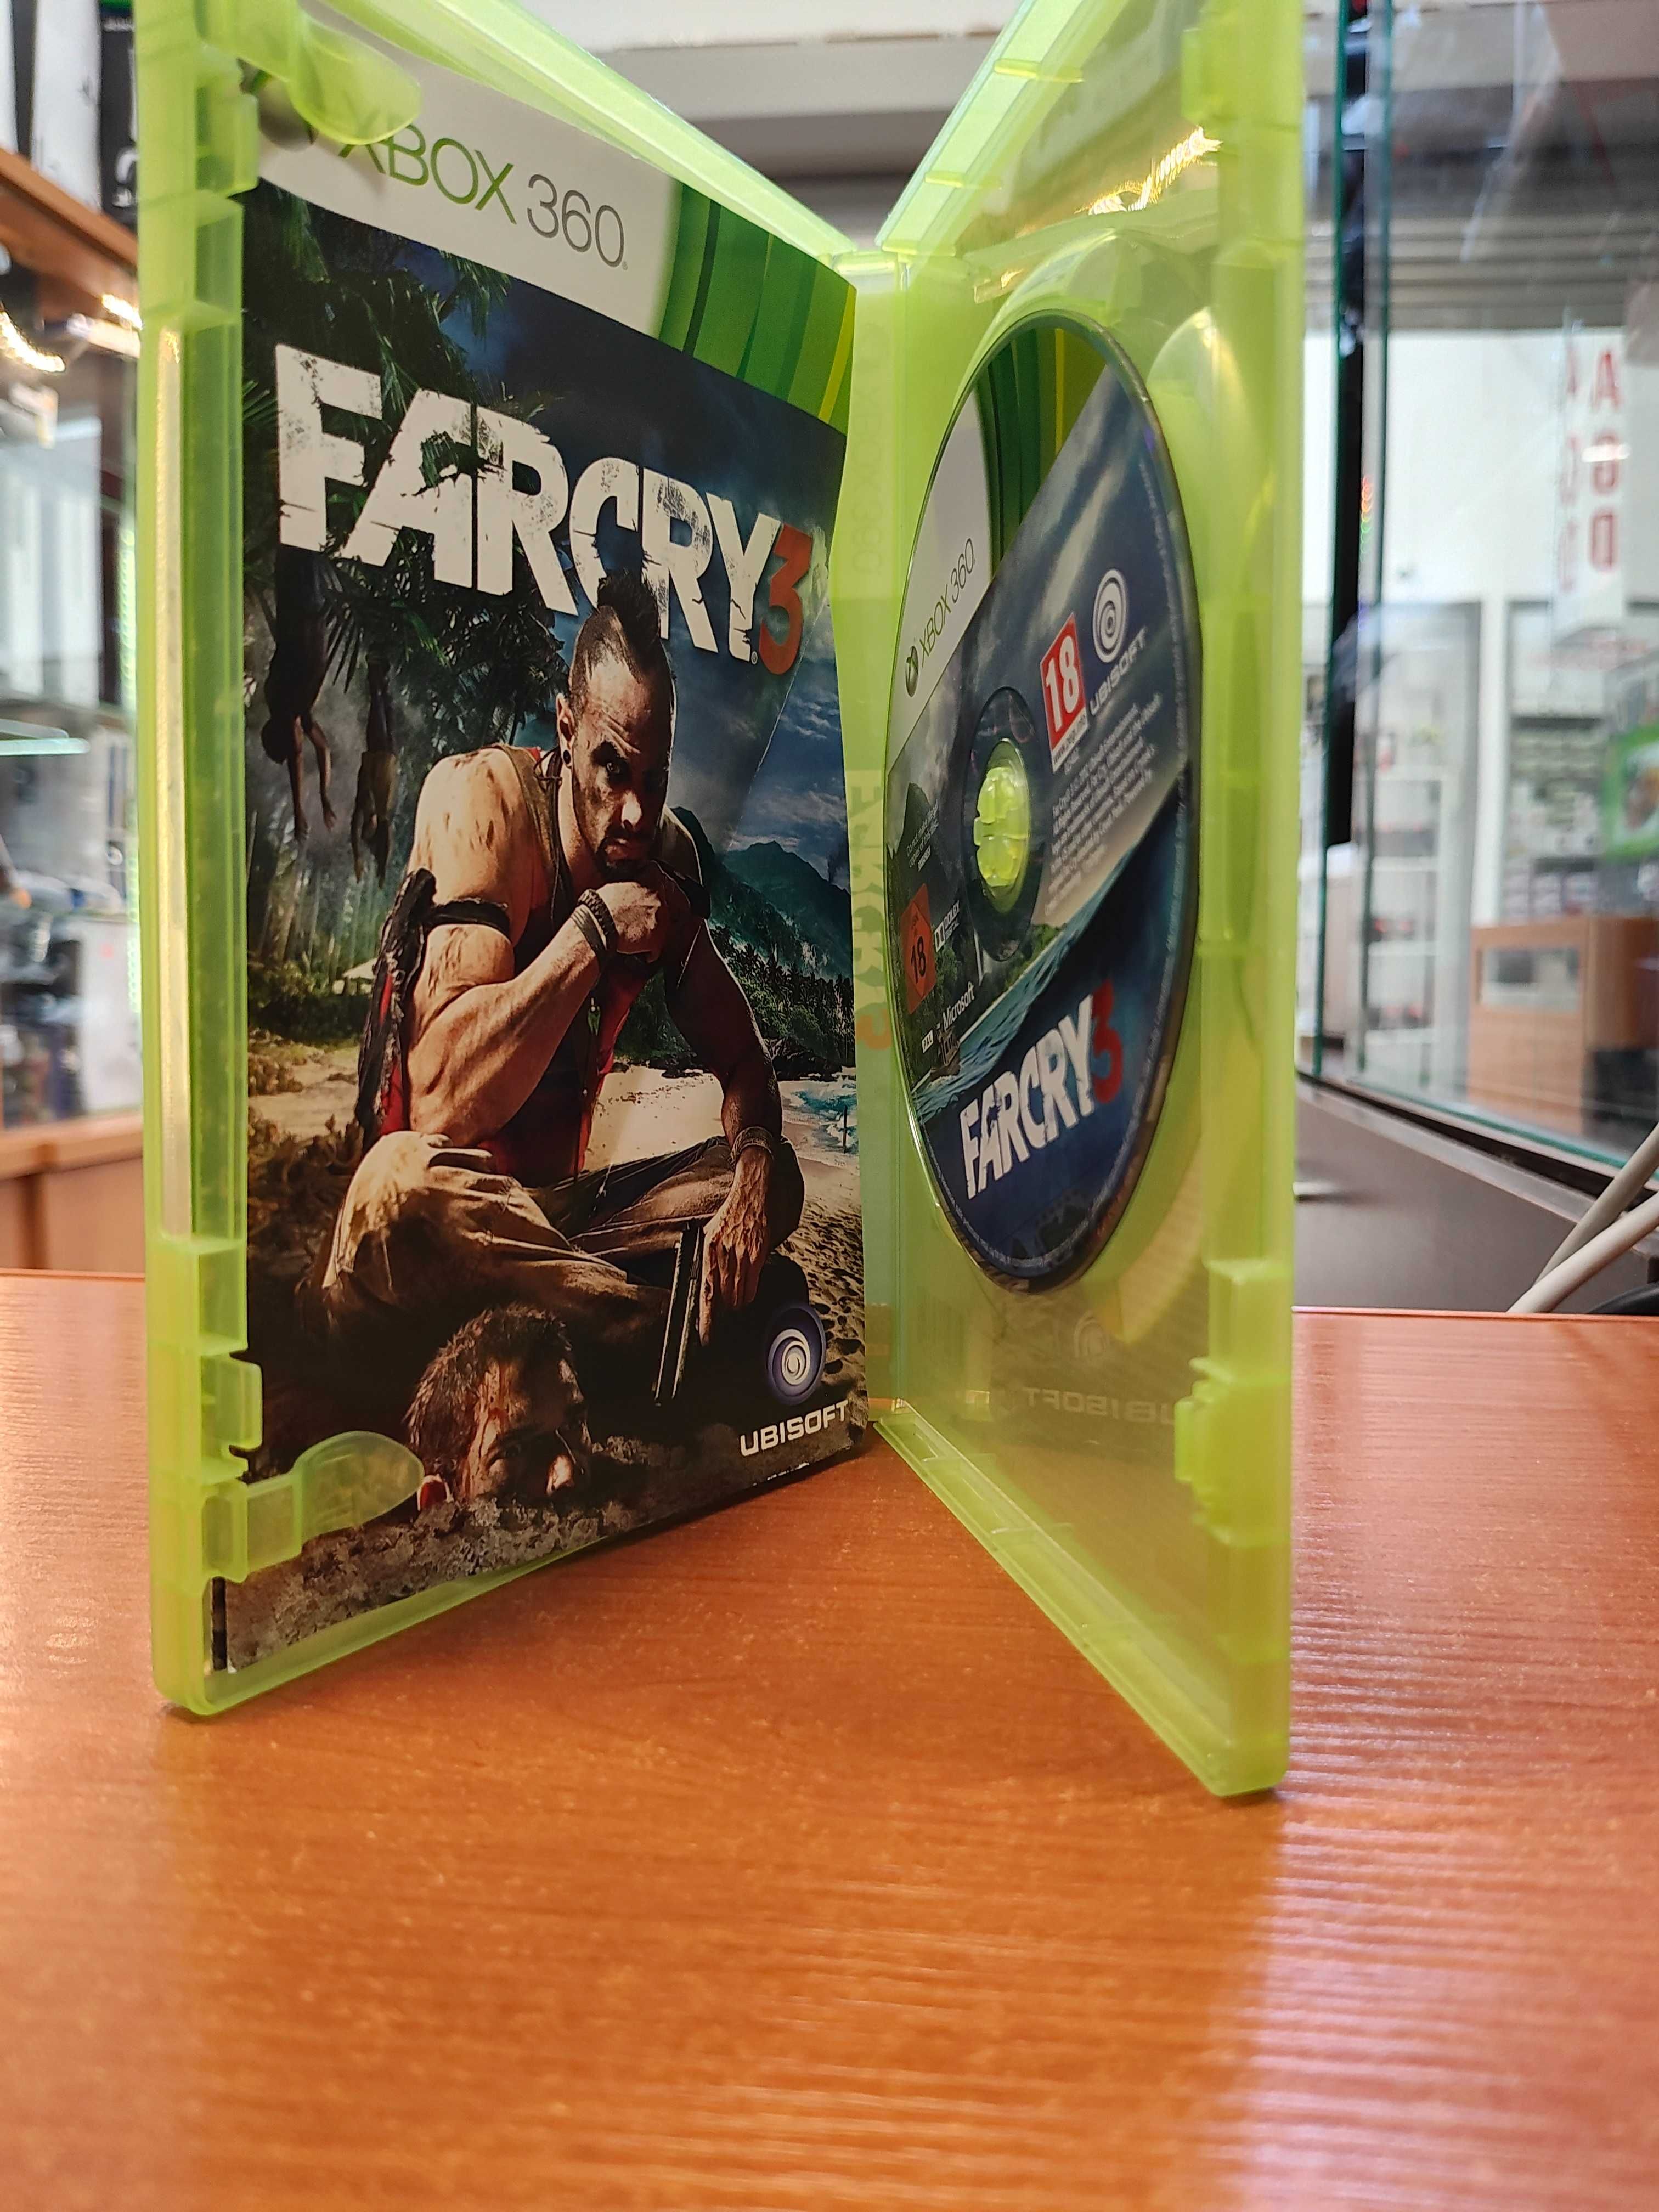 Far Cry 3 XBOX 360 Sklep Wysyłka Wymiana PL